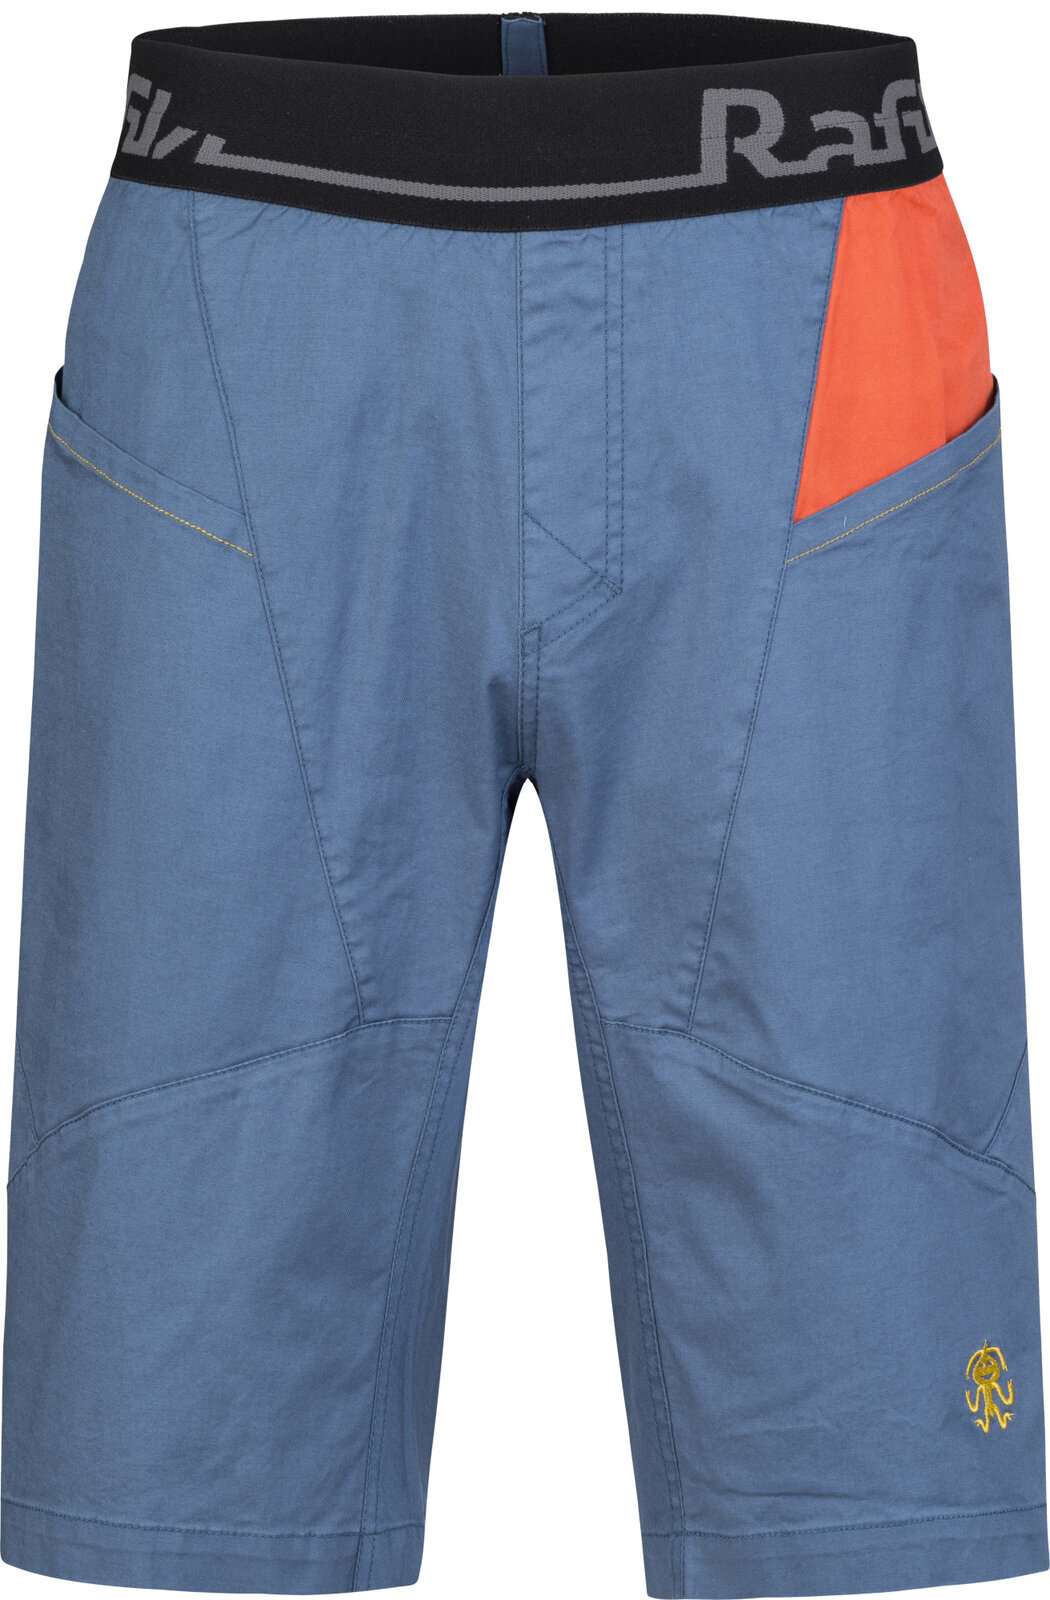 Outdoor Shorts Rafiki Megos Man Shorts Ensign Blue/Clay M Outdoor Shorts